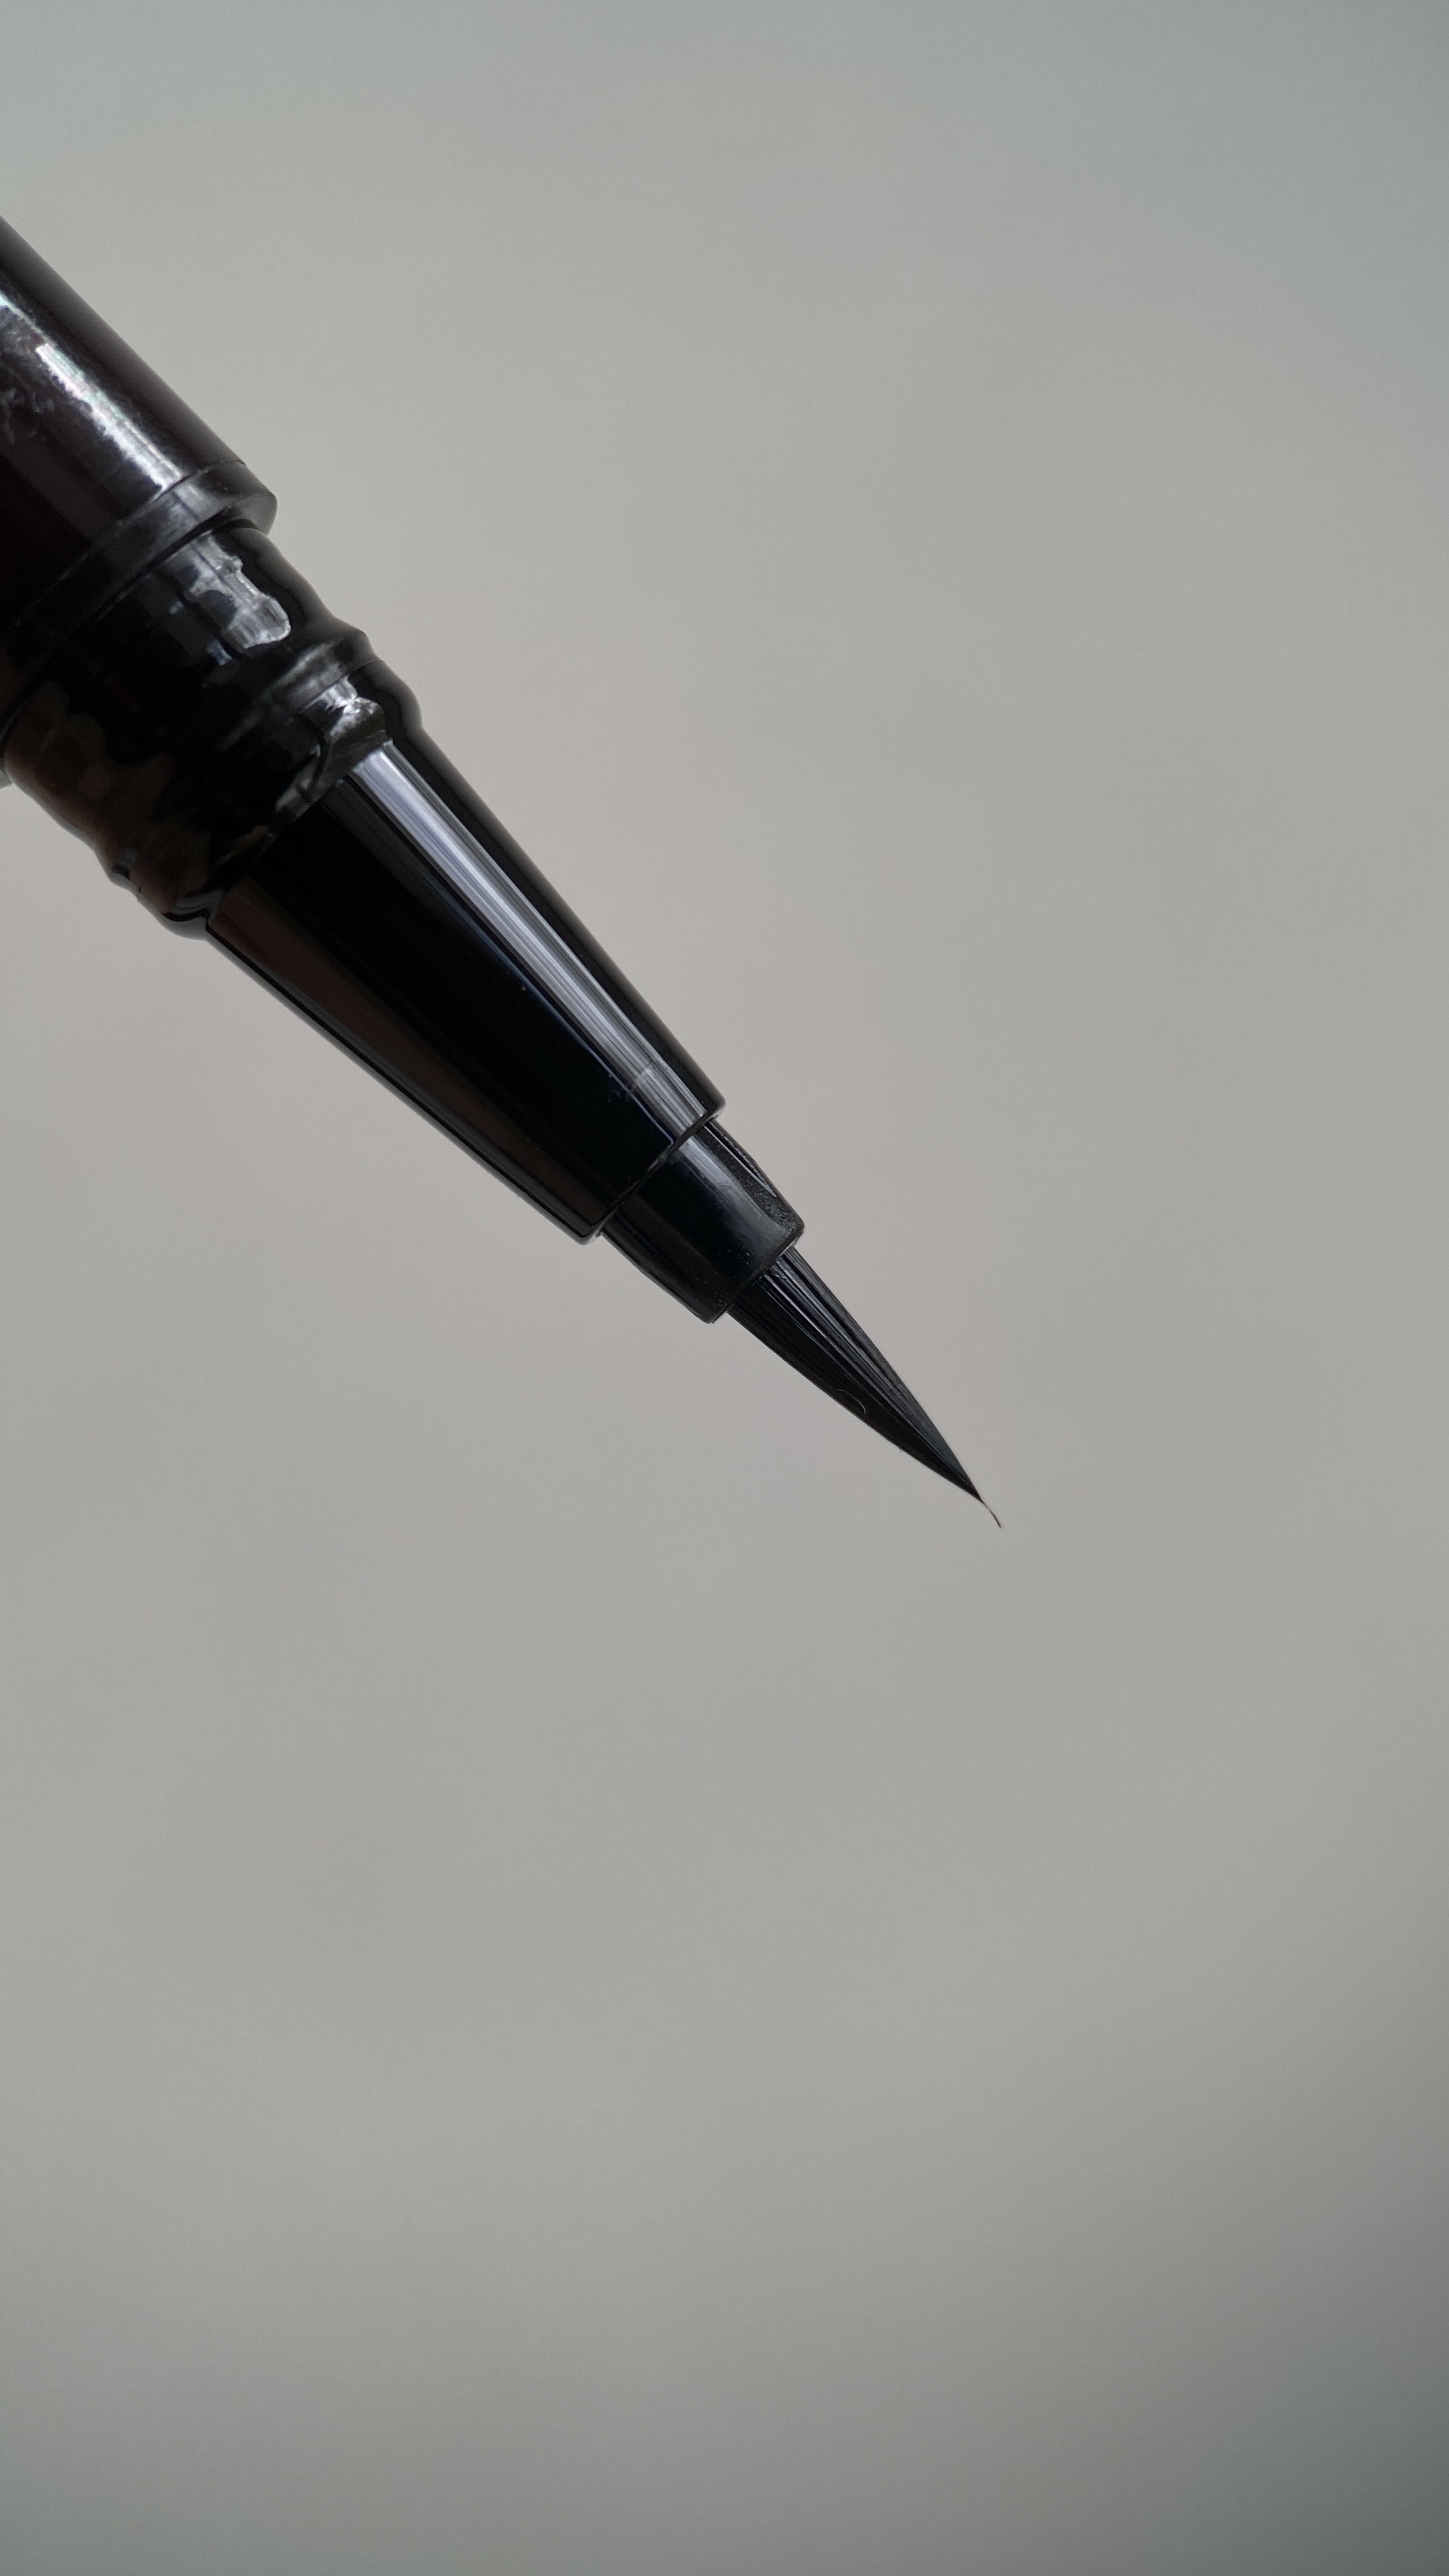 міцна стрілка для навислої повіки або MAYBELLINE стрибає вище голови / tattoo liner Ink pen